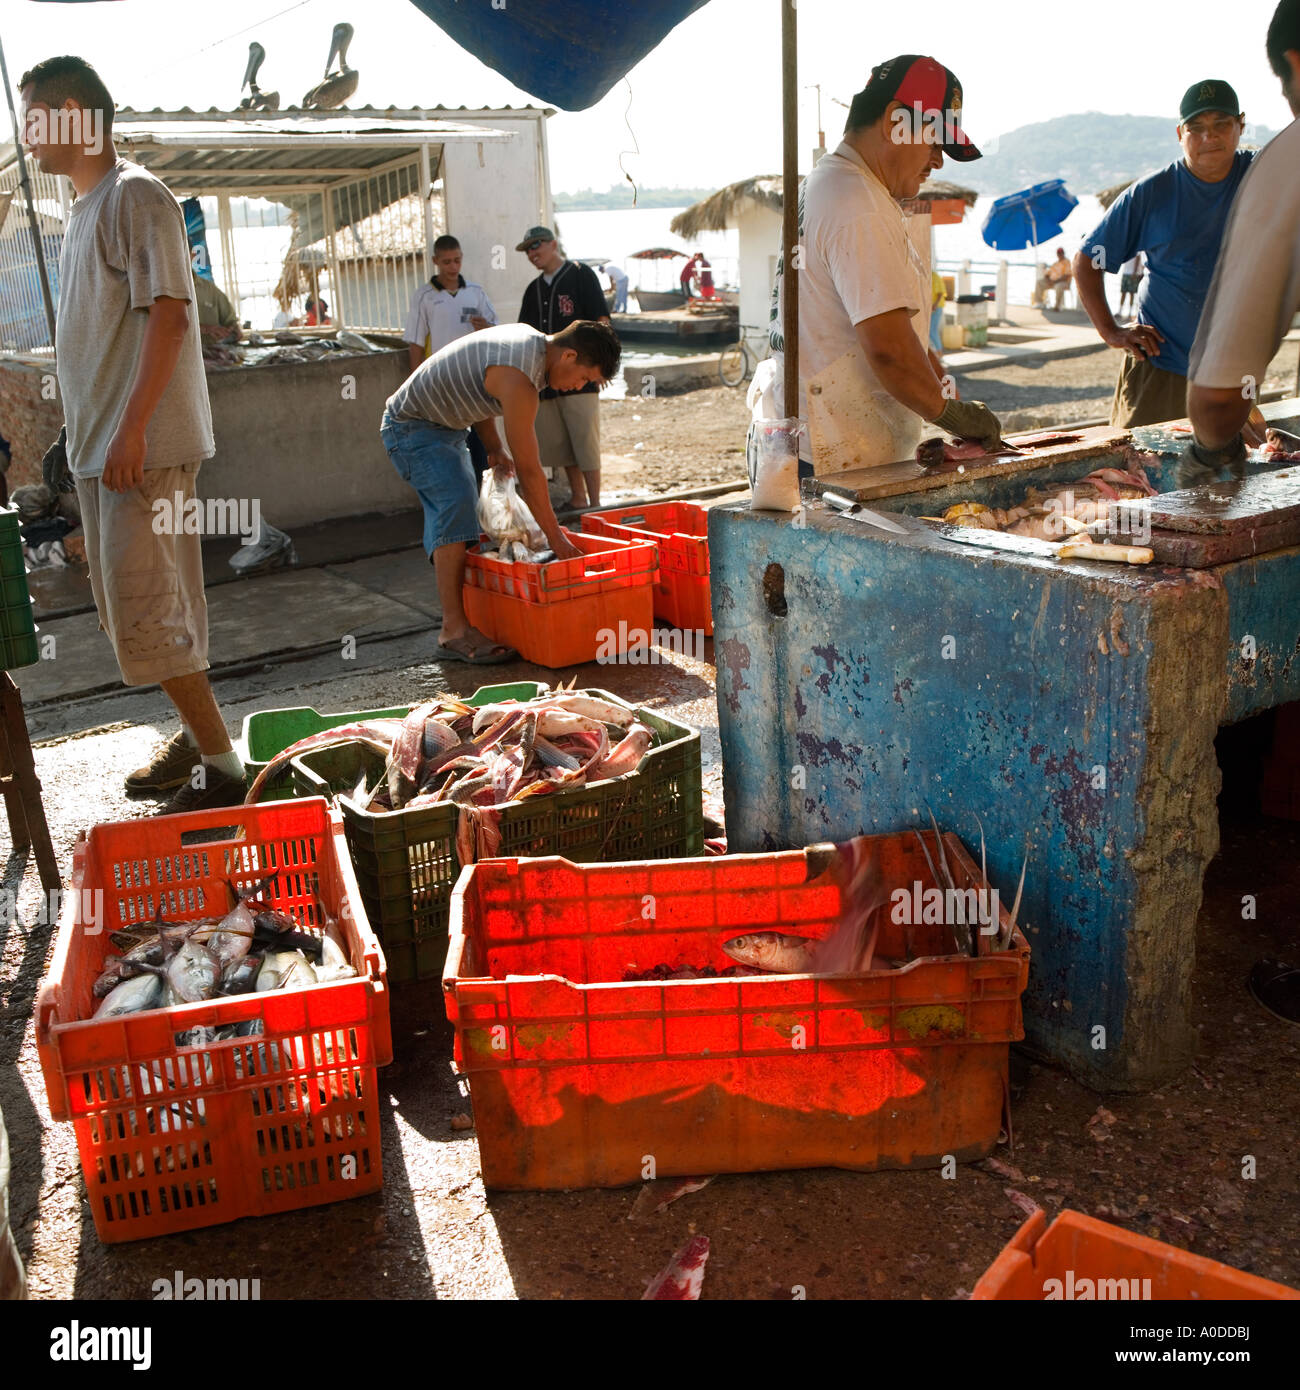 Les clients vérifient quai de poisson frais au Mexique Banque D'Images